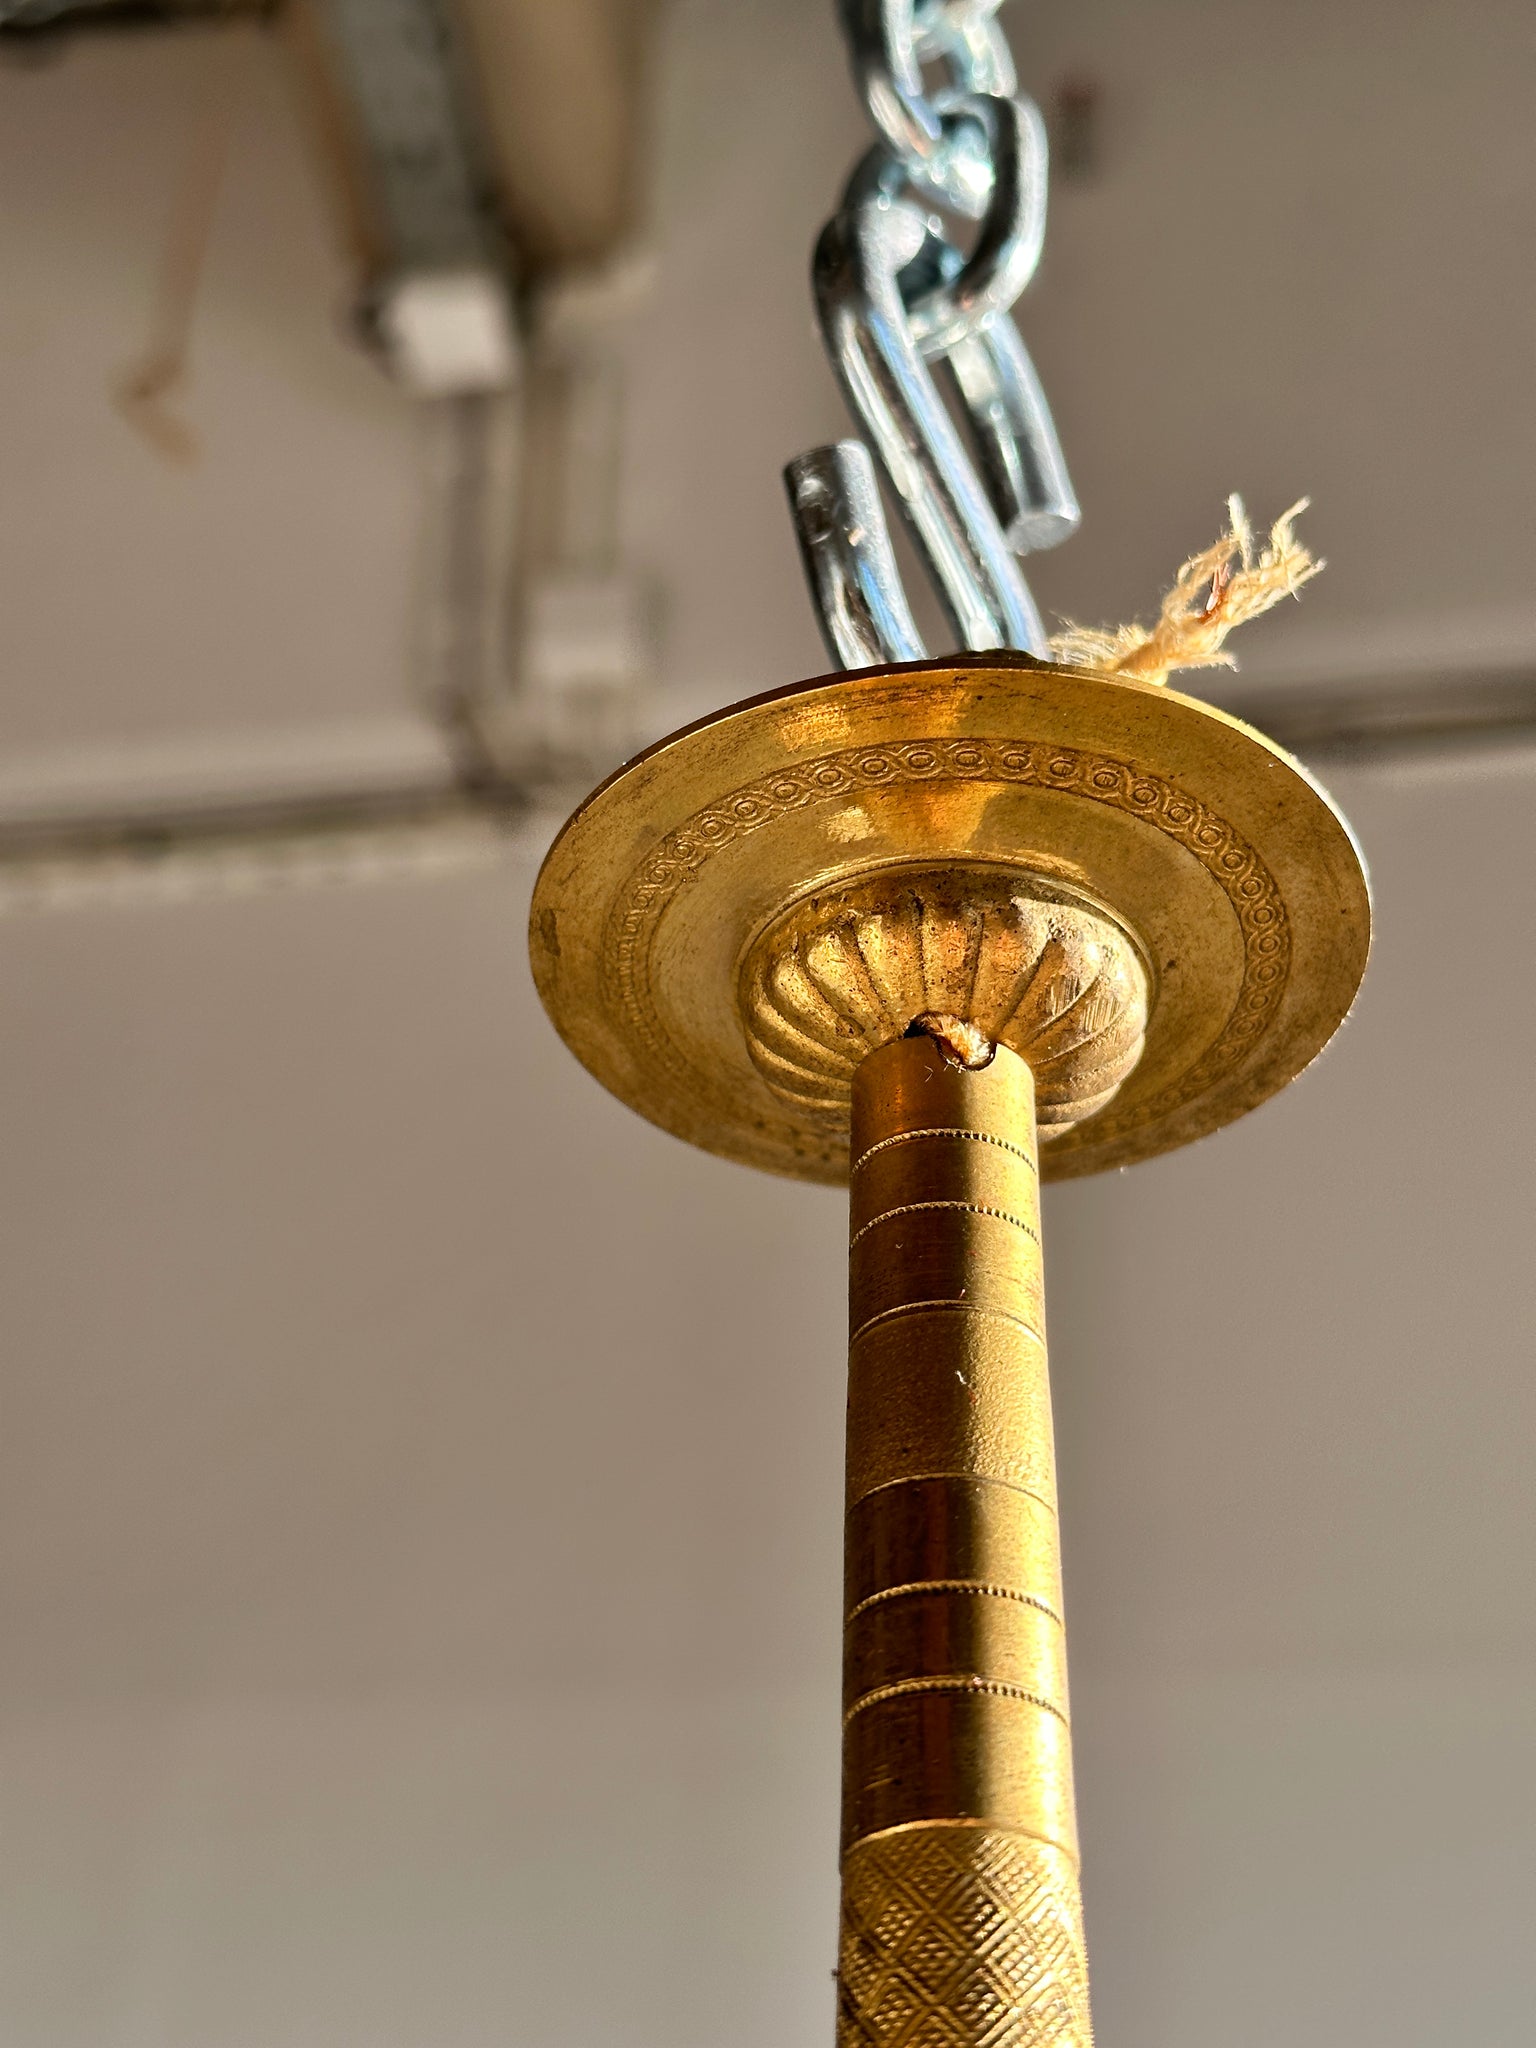 Petit lustre en métal doré à 5 bras de lumière diamètre 30cm